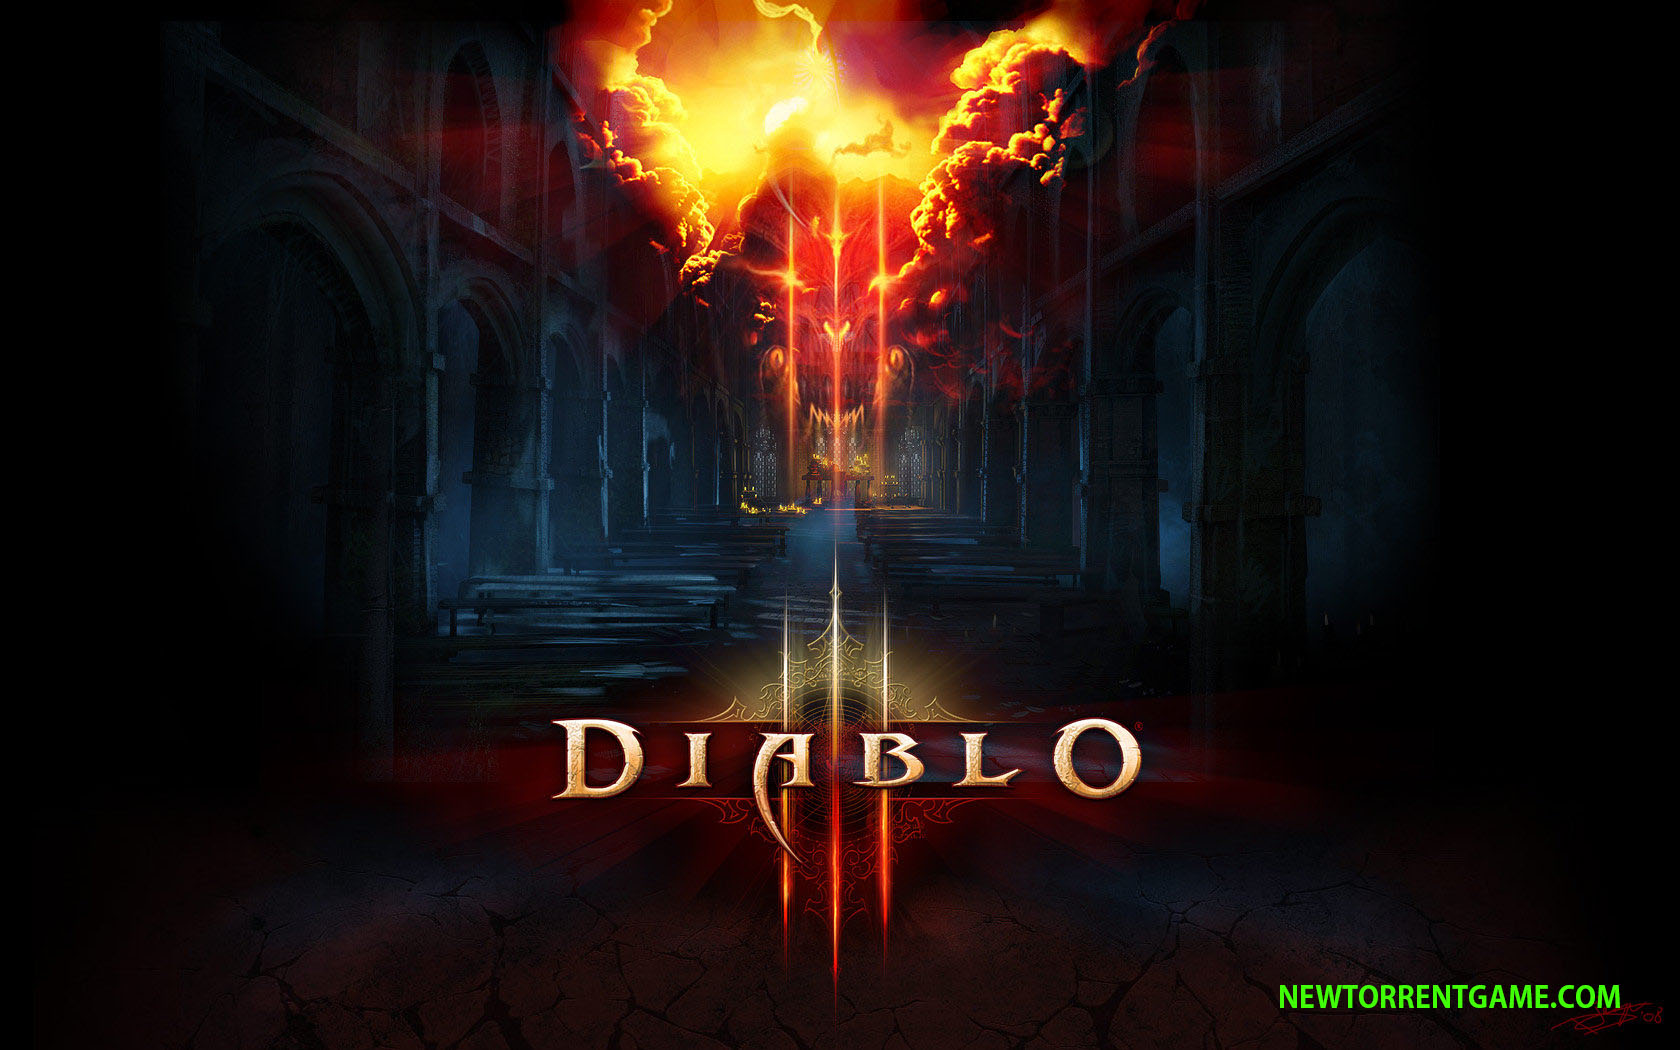 Diablo 3 full download torrent windows 7